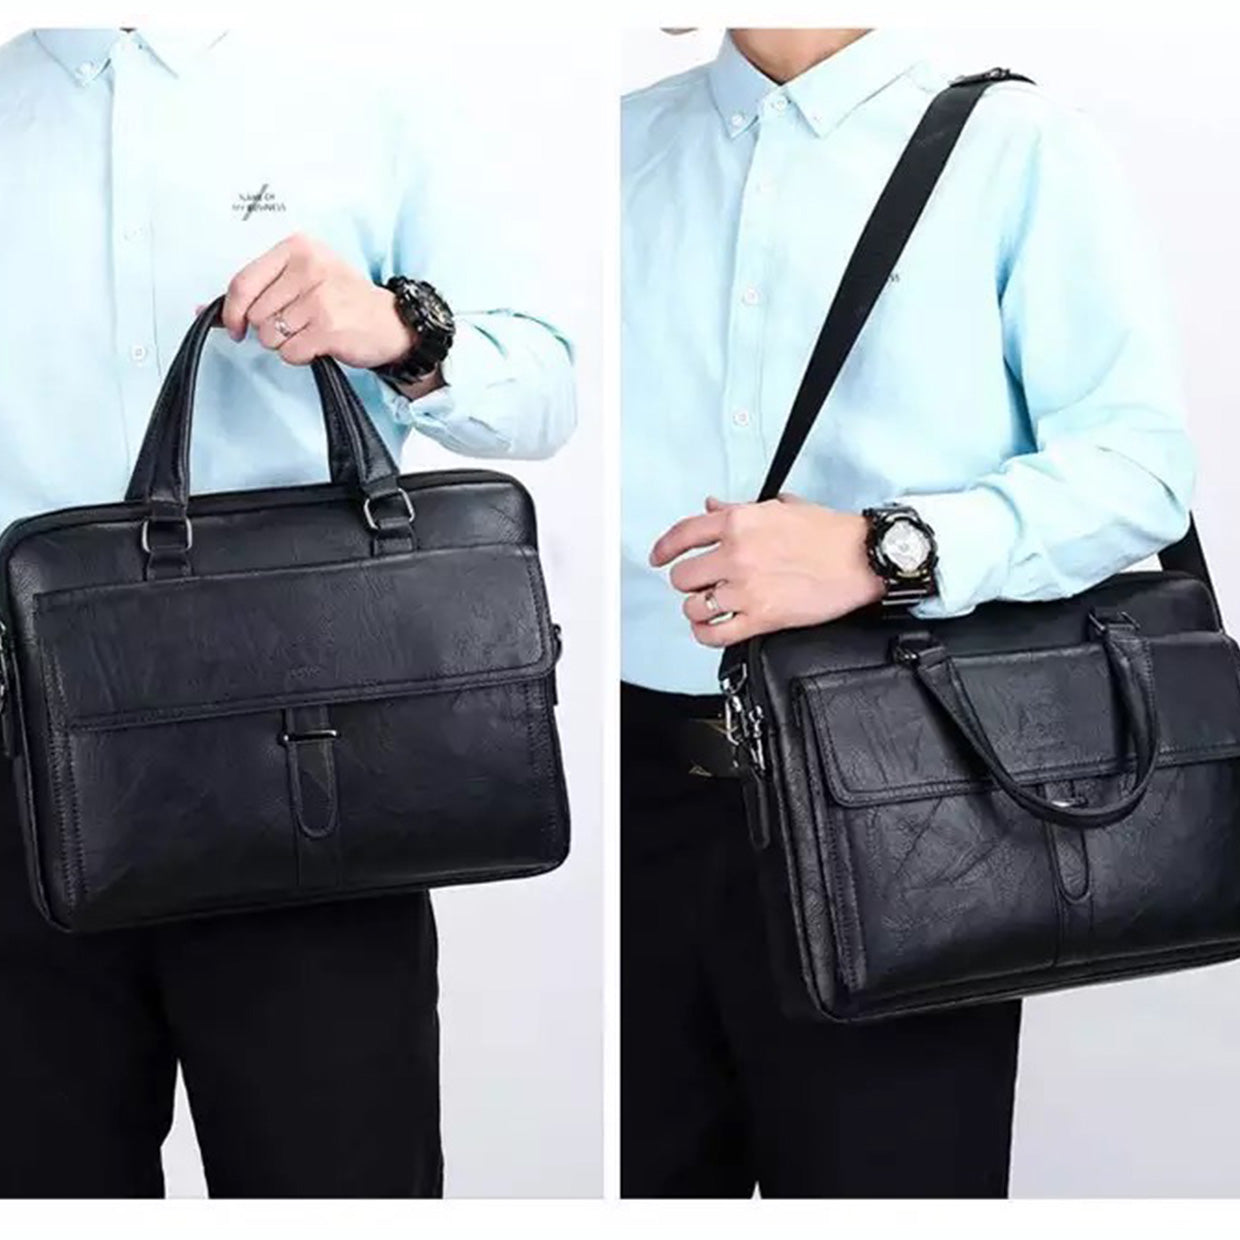 Men Business Bag & Laptop Briefcase Bags - Business Laptop Bag